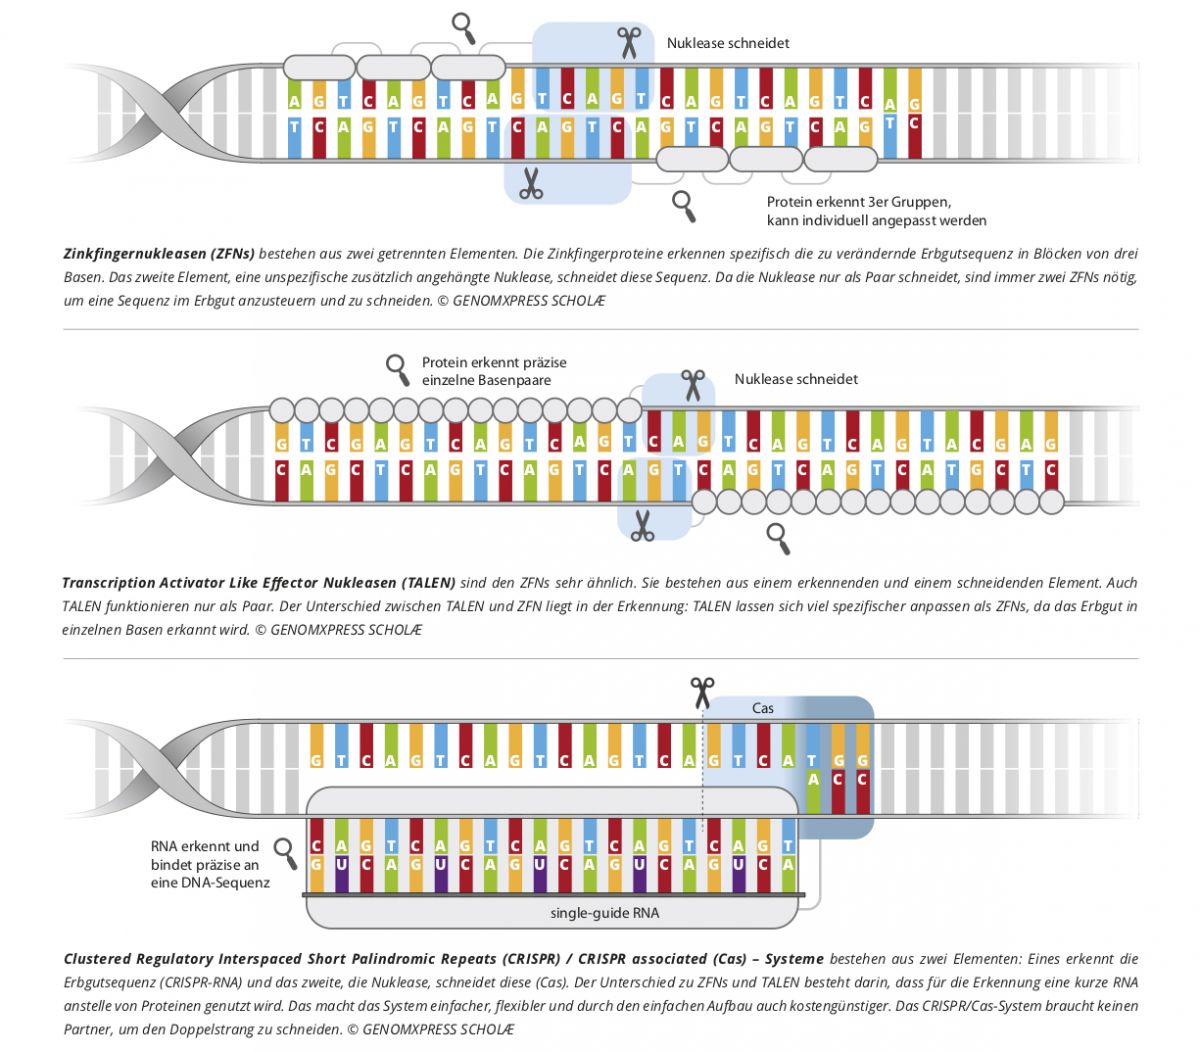 Das Genomeditierungswerkzeug TALEN erkennt und schneidet eine bestimmte DNA-Sequenz mit Hilfe von Proteinen. Diese Proteine namens TALE stammen ursprünglich aus Xanthomonas-Bakterien, die damit den Stoffwechsel von Wirtspflanzen beeinflussen können. Jedes TALE-Protein bindet an eine einzelne DNA-Base. Um eine ausreichende Spezifität bei der Bindung zu erreichen, werden 15 bis 20 TALE-Domänen aneinandergekoppelt. Am Ende des Proteinstrangs sitzt die Nuklease Fok1, die einen Schnitt erzeugt. Wissenschaftler:innen haben mit der Technik bereits gezielte Veränderungen in Pflanzen wie Mais und Tabak vorgenommen.
